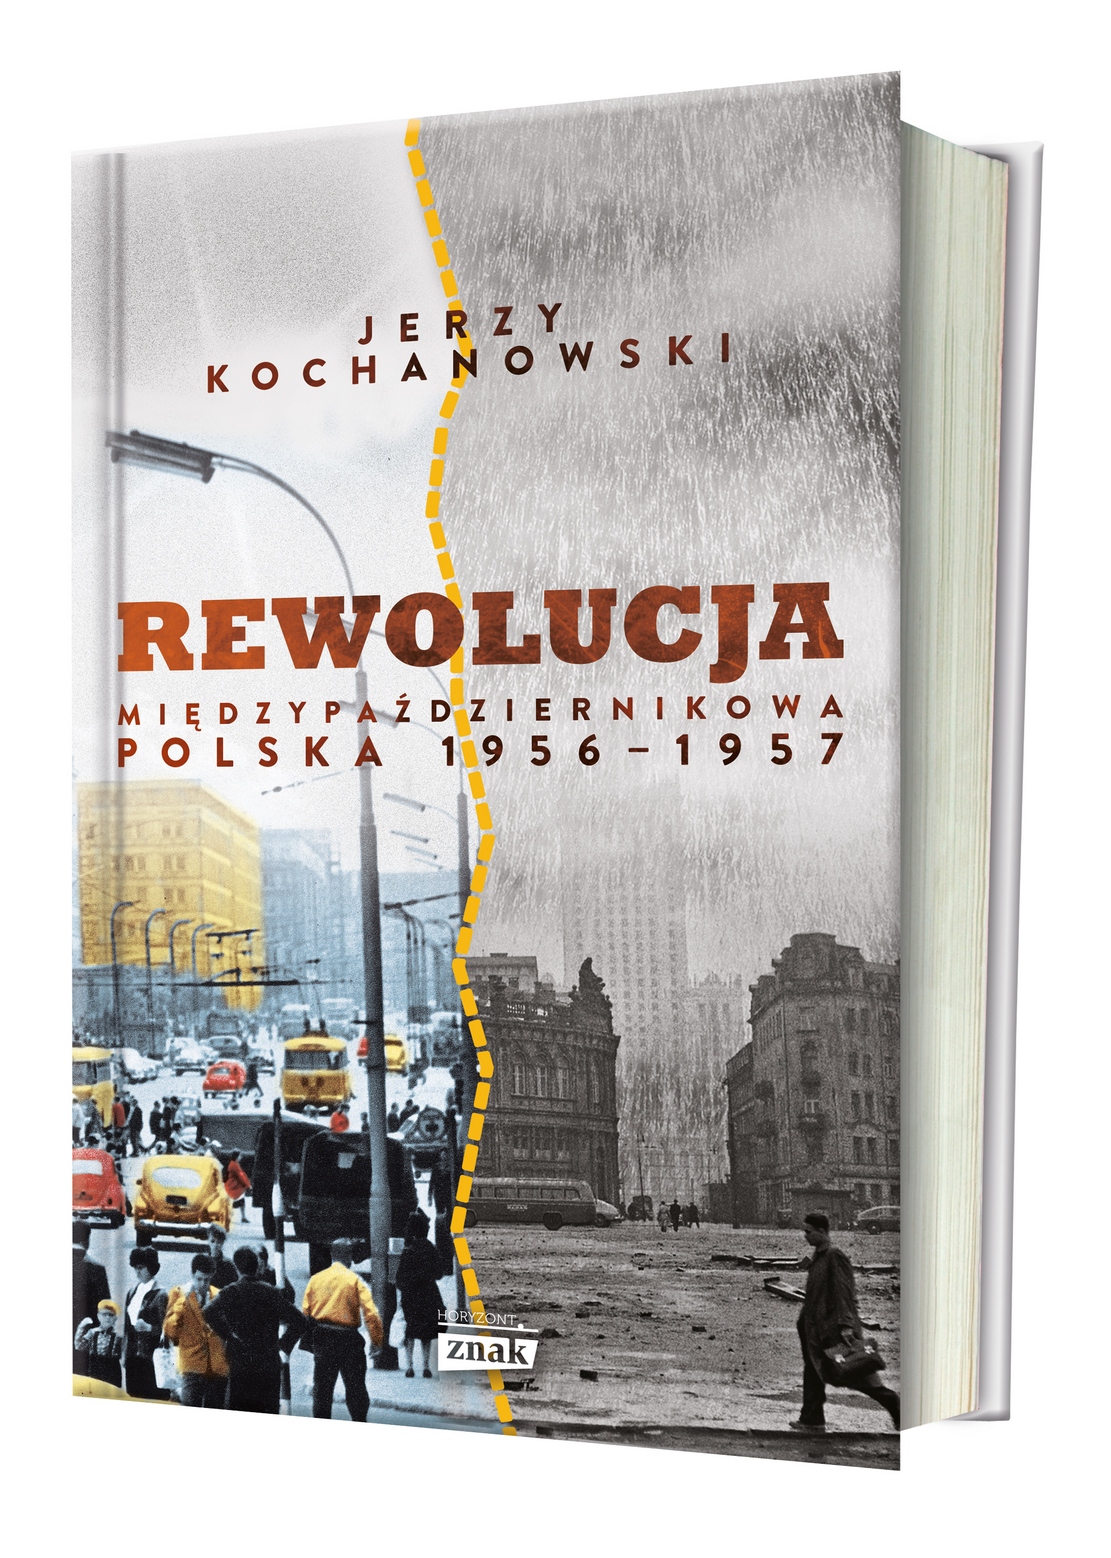 Artykuł stanowi fragment najnowszej książki profesora Jerzego Kochanowskiego, zatytułowanej "Rewolucja międzypaździernikowa. Polska 1956-1957" (Znak Horyzont 2017).